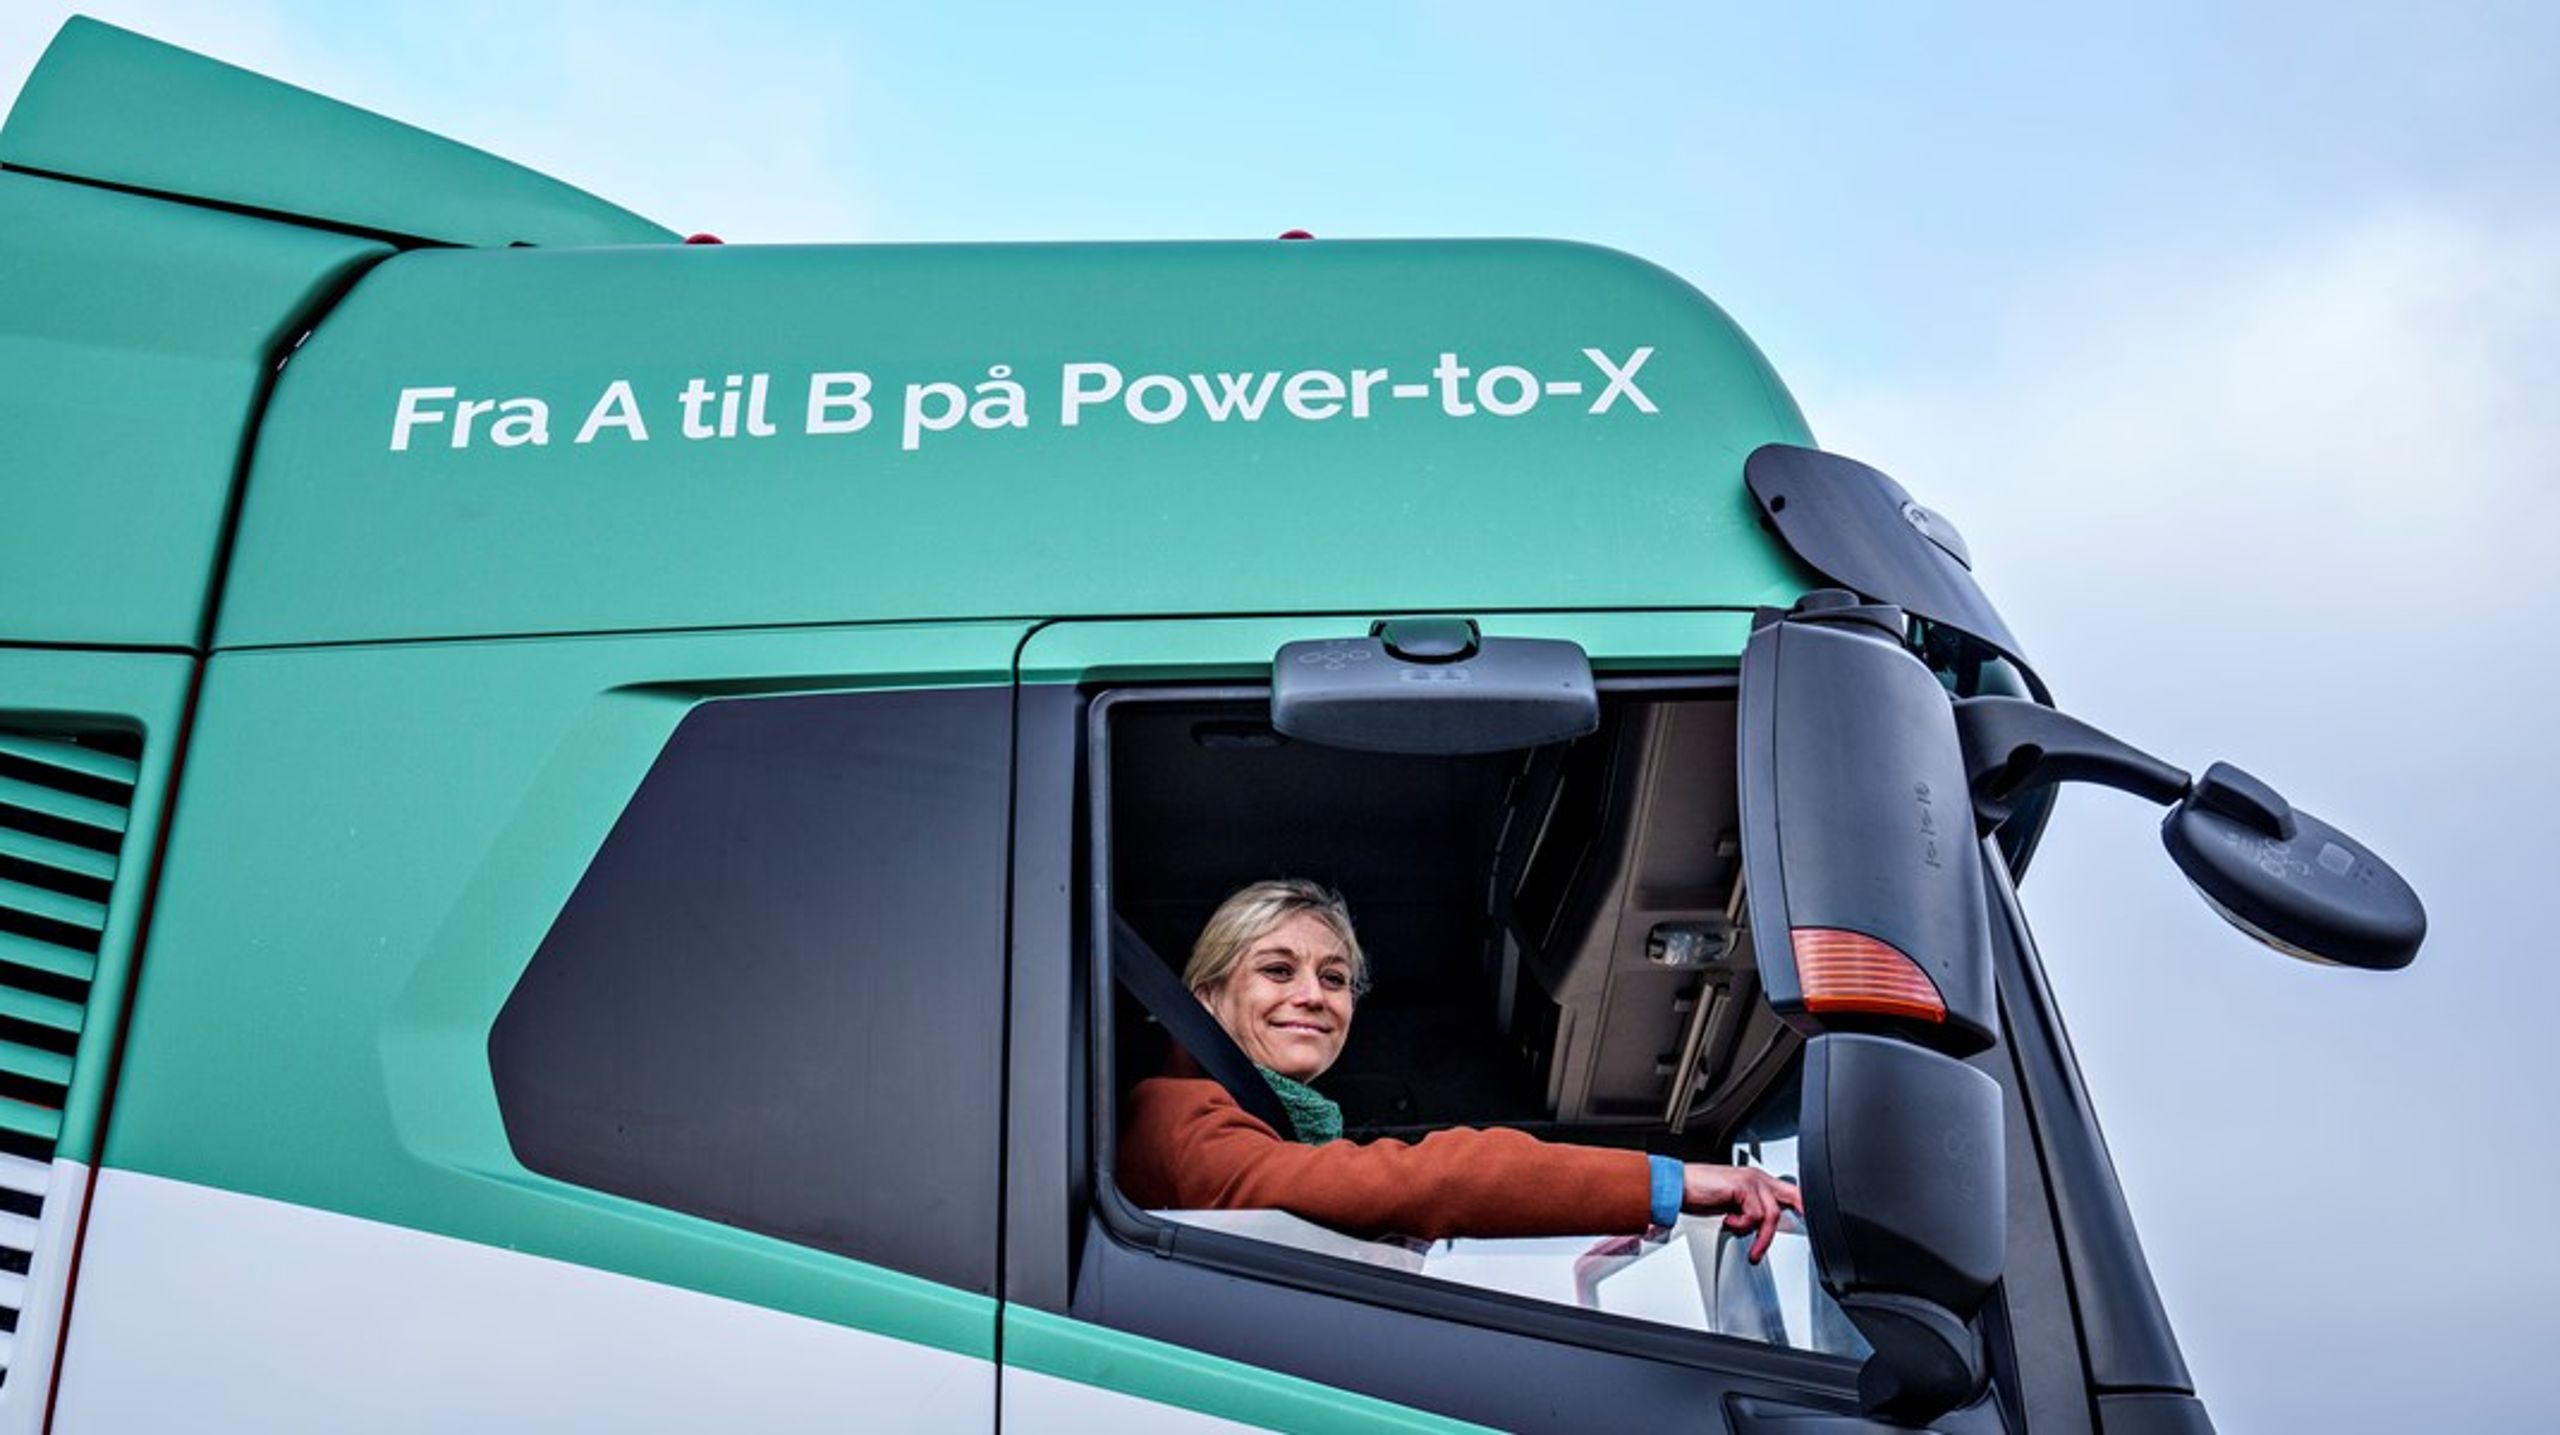 Mere brændstof til Power-to-X i form af tilskud fra Innovationsfonden. Her ses den forhenværende transportminister Trine Bramsen i marts 2022, da Europas første Power-to-X lastbil var kommet til Danmark.&nbsp;